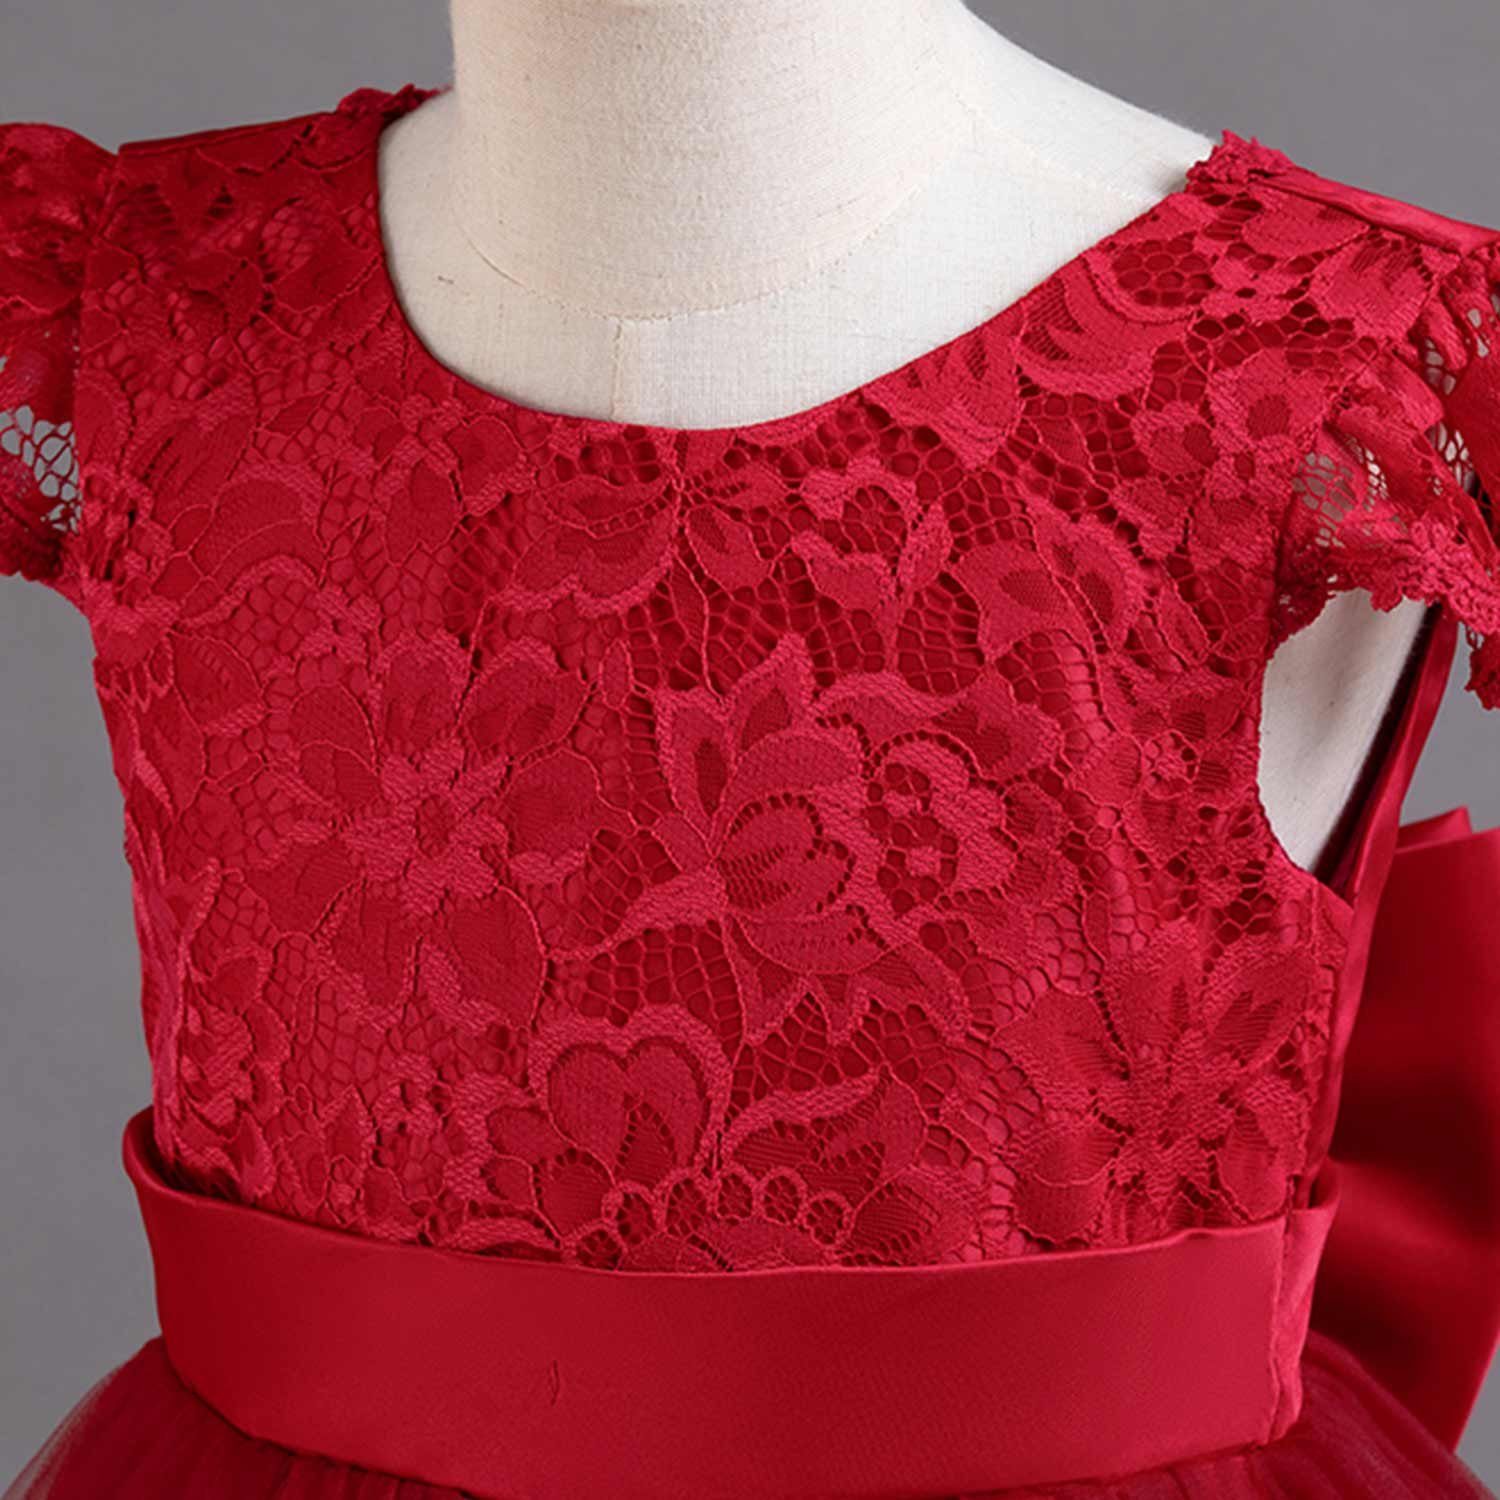 Kinderkleider Prinzessinnenkleid Rot Daisred Abendkleid Blumenmädchen Tüllkleider